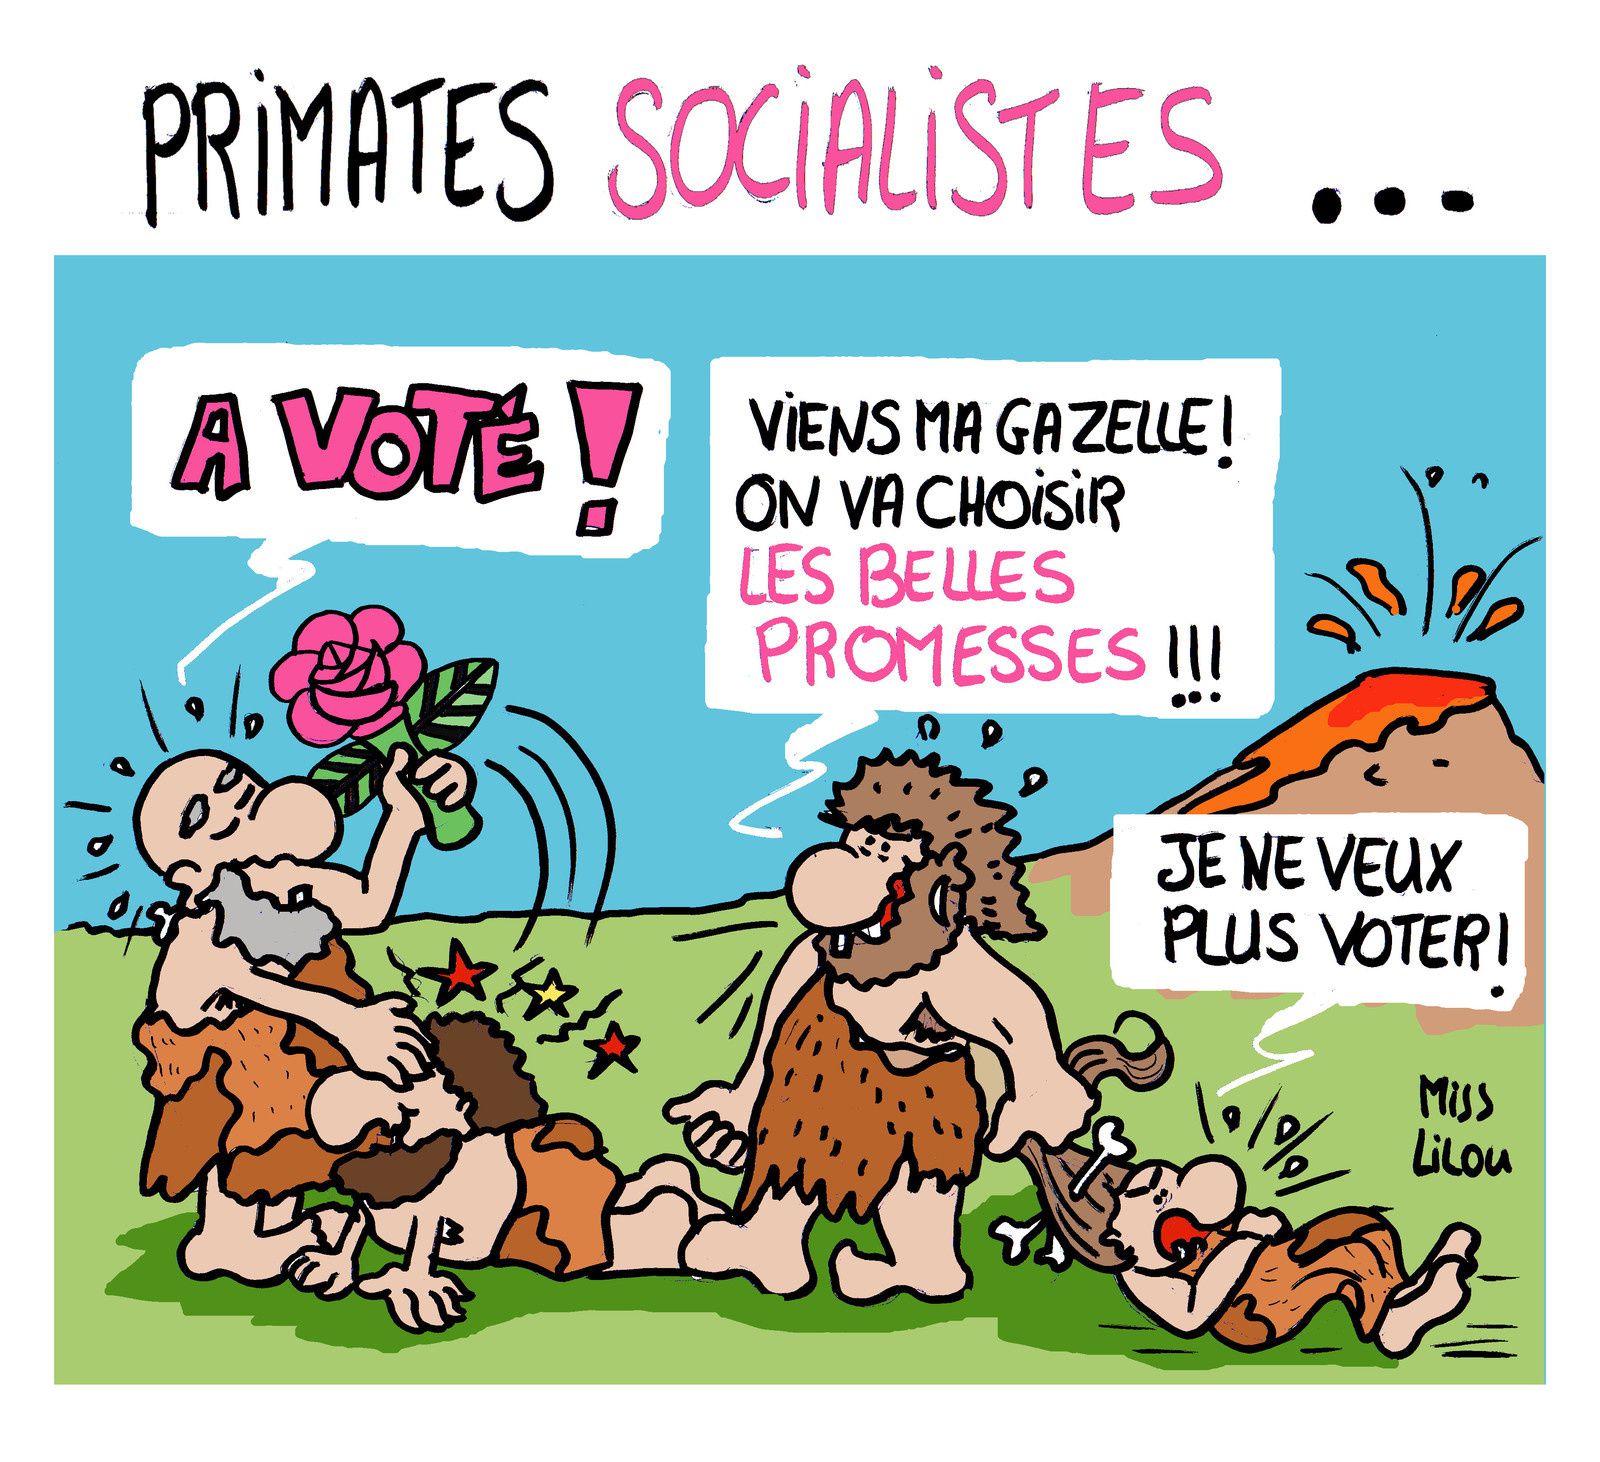 humour en images II - Page 19 Ob_812589_primates-socialistes